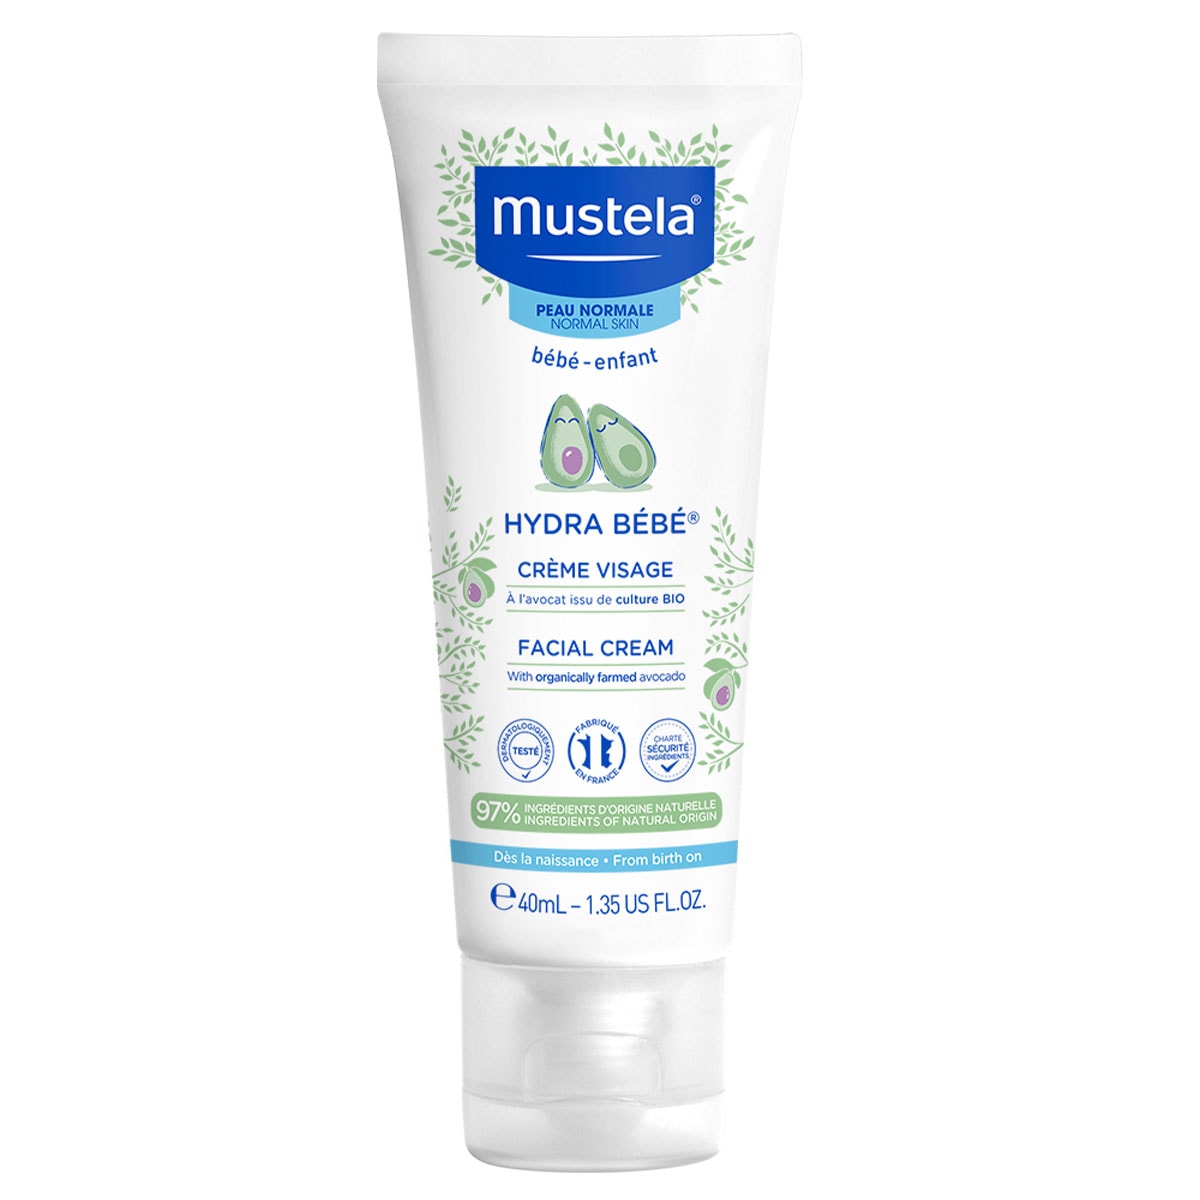 Mustela Hydra-Bebe Facial Cream 40ml